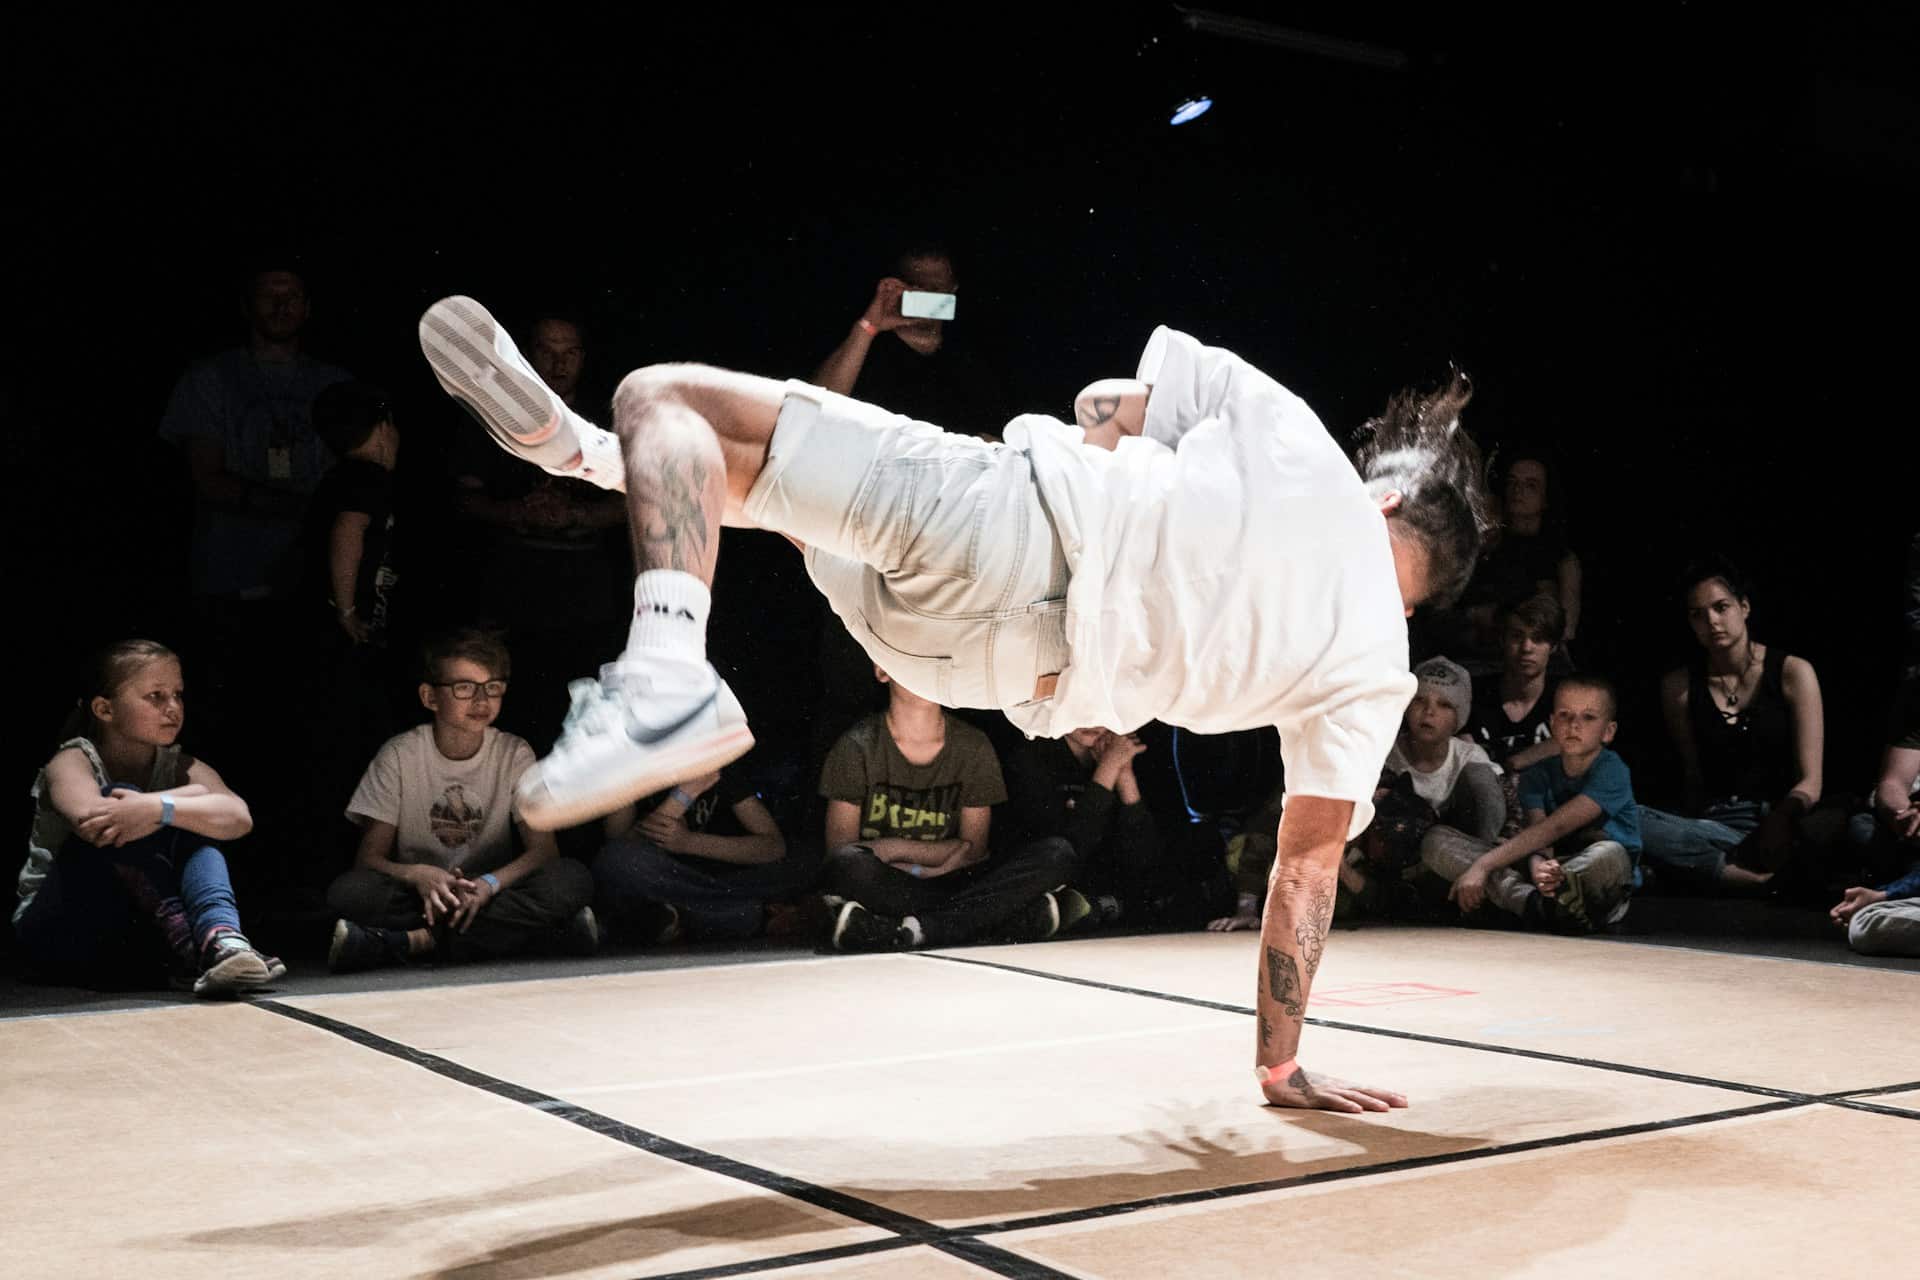 Initiation breakdance : un homme fait une pose de breakdance